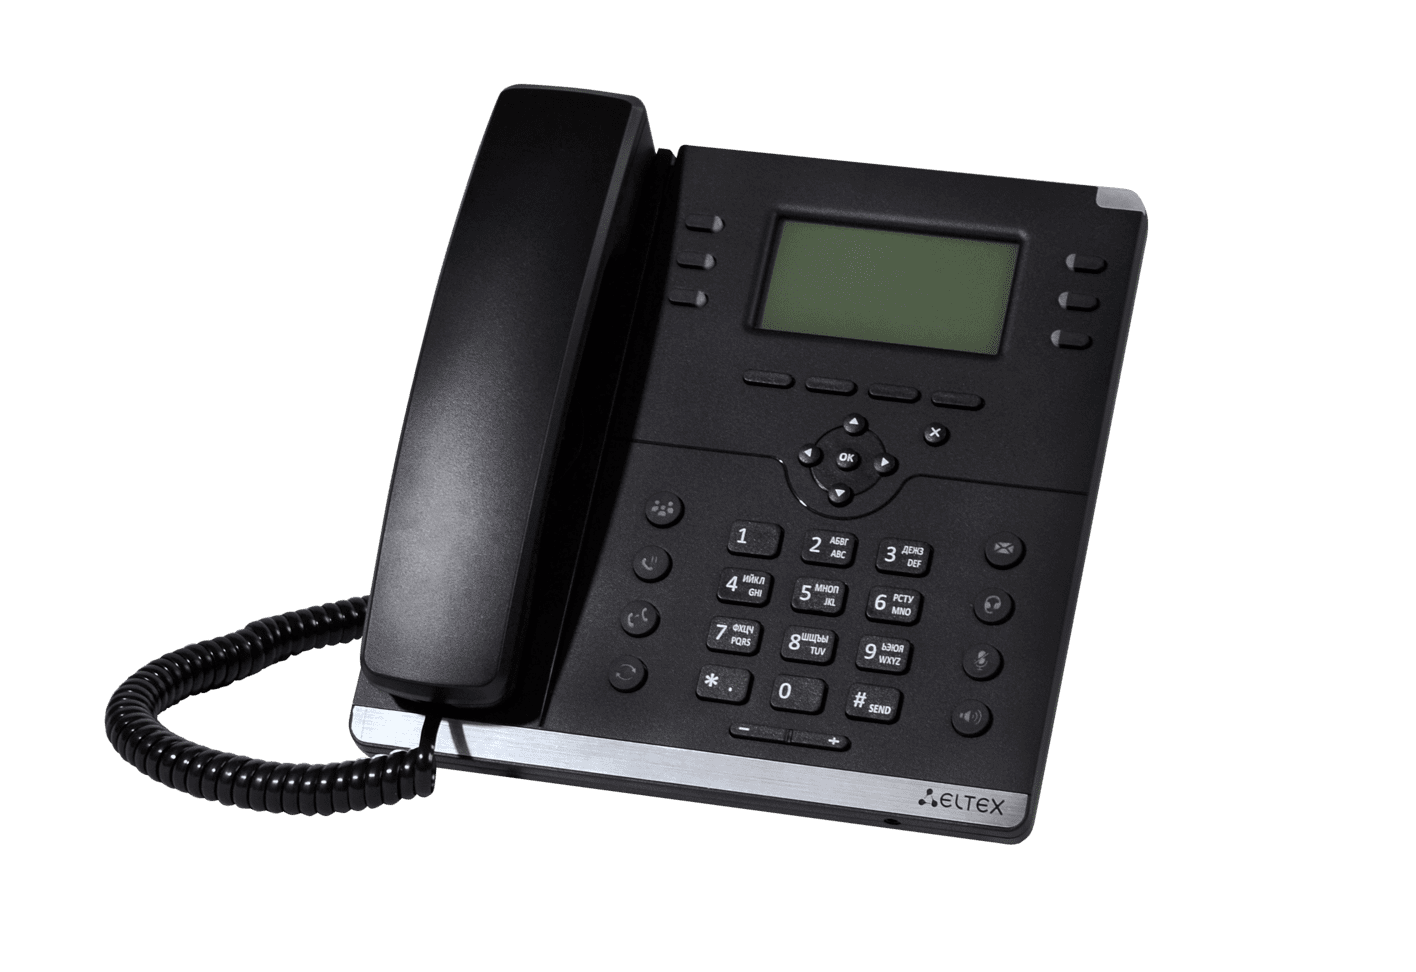 IP-телефон VP-15